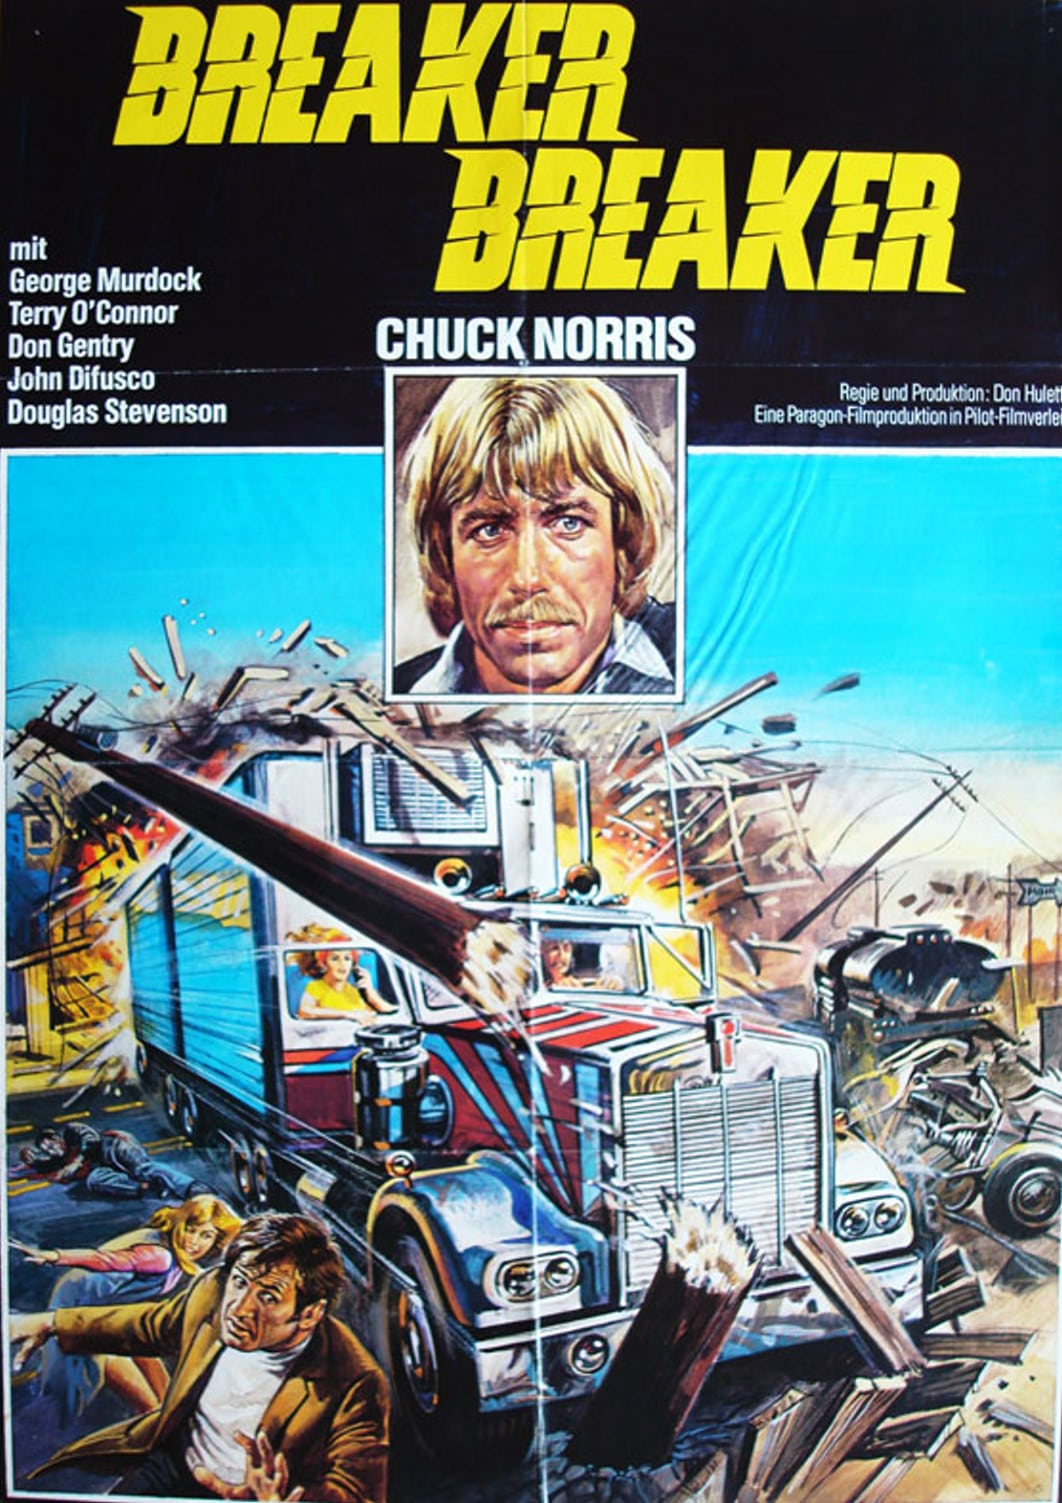 Plakat von "Breaker! Breaker! - Voll in Action"